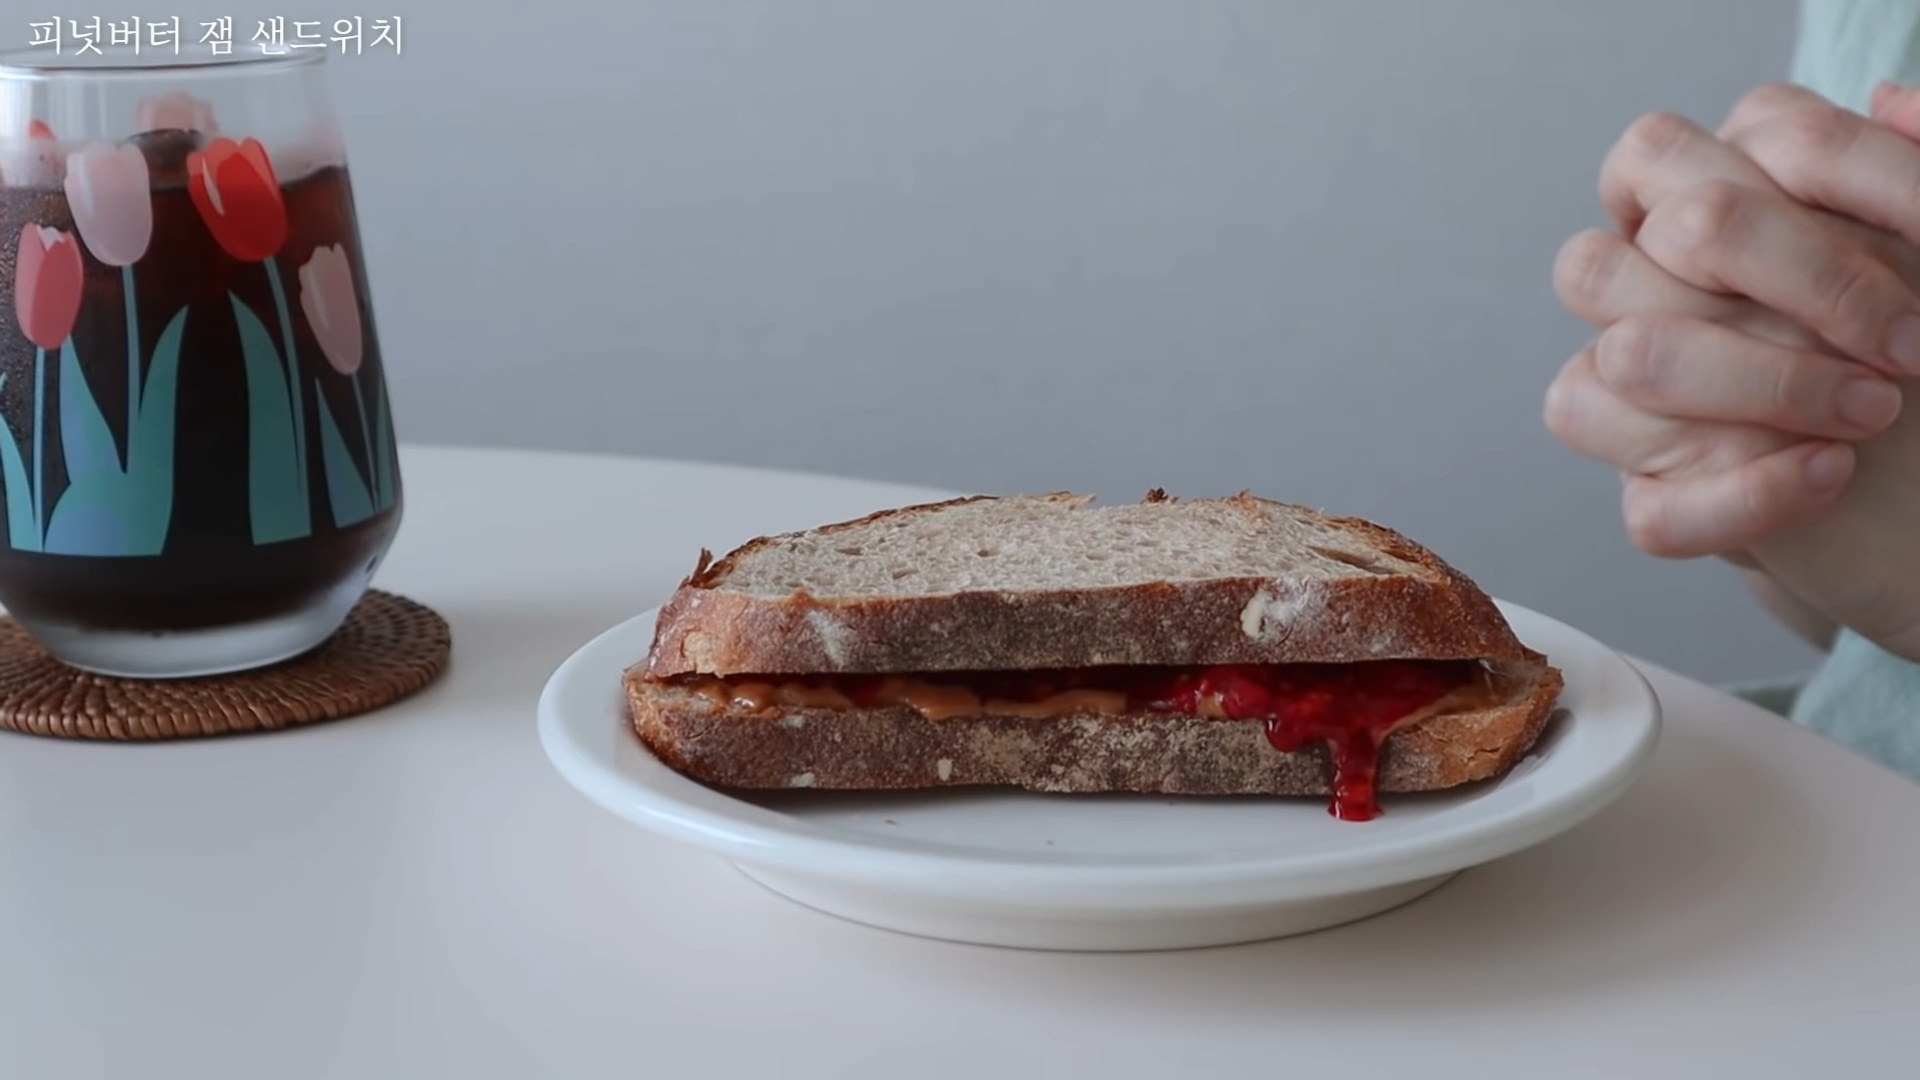 Vlogger Hàn chia sẻ bí quyết giảm 10kg nhờ tự tay làm những chiếc sandwich theo công thức của riêng mình - Ảnh 8.